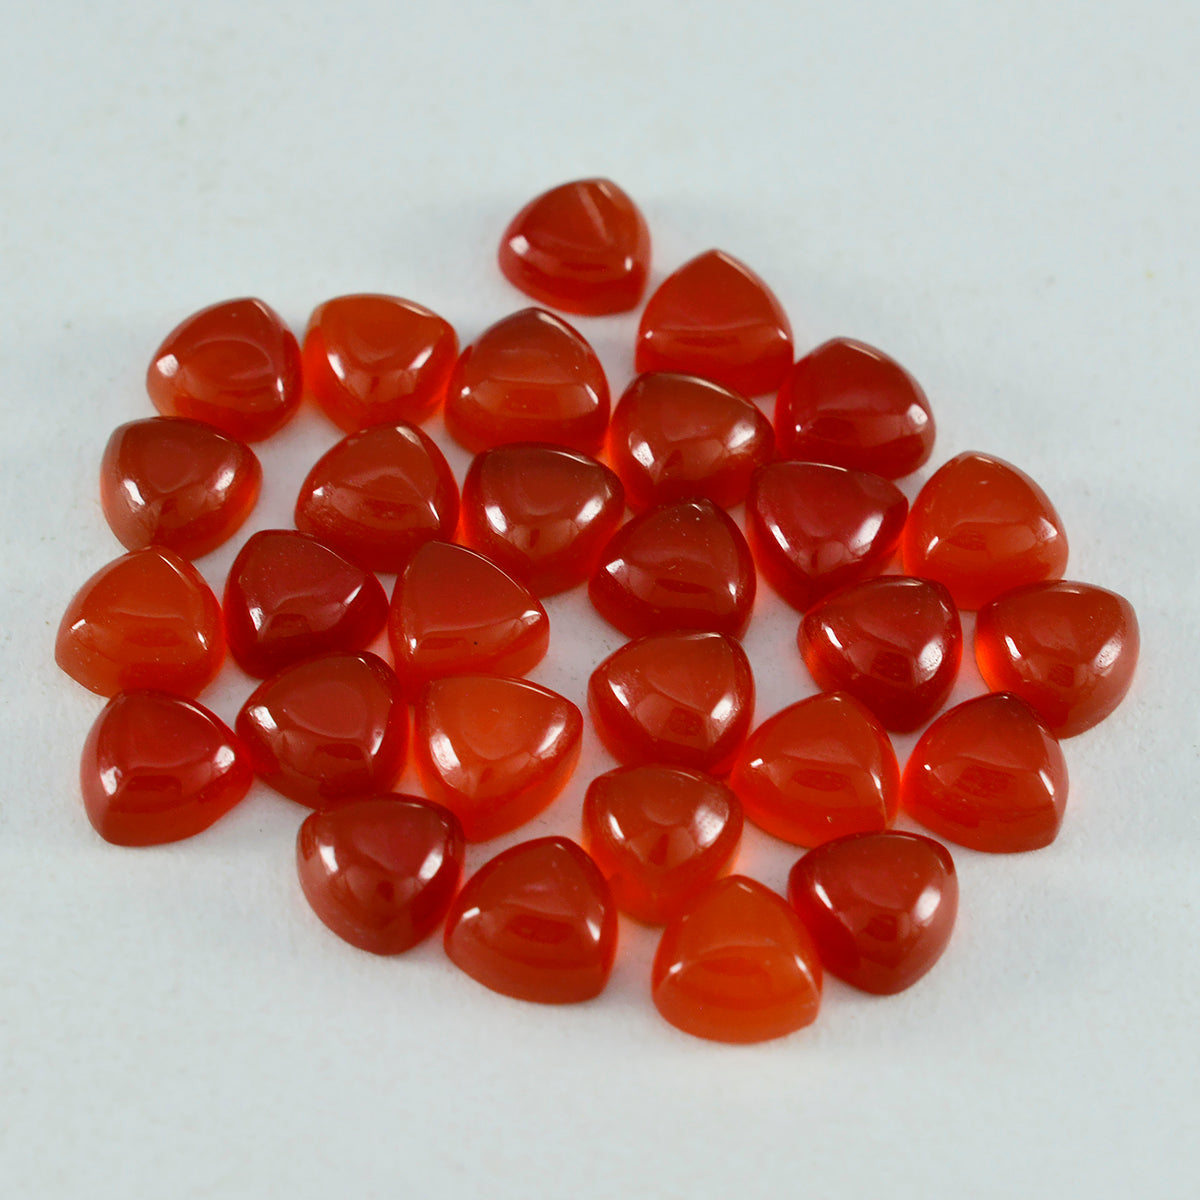 riyogems 1 шт. красный оникс кабошон 5x5 мм форма триллион отличное качество свободный драгоценный камень